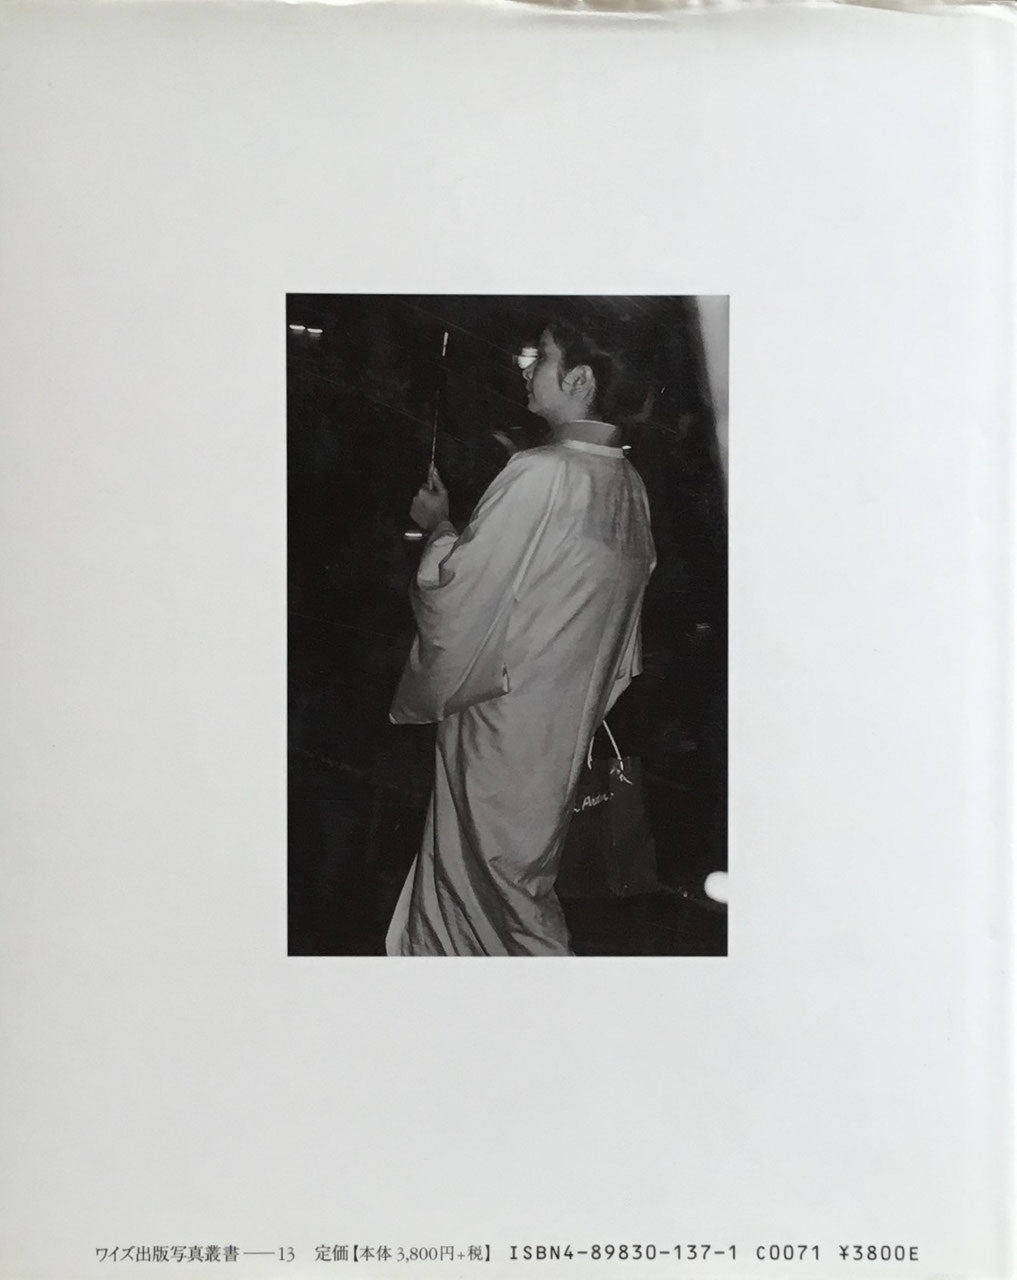 虚飾の街　銀座1983-2002　飯田勇写真集　ワイズ出版　写真叢書13